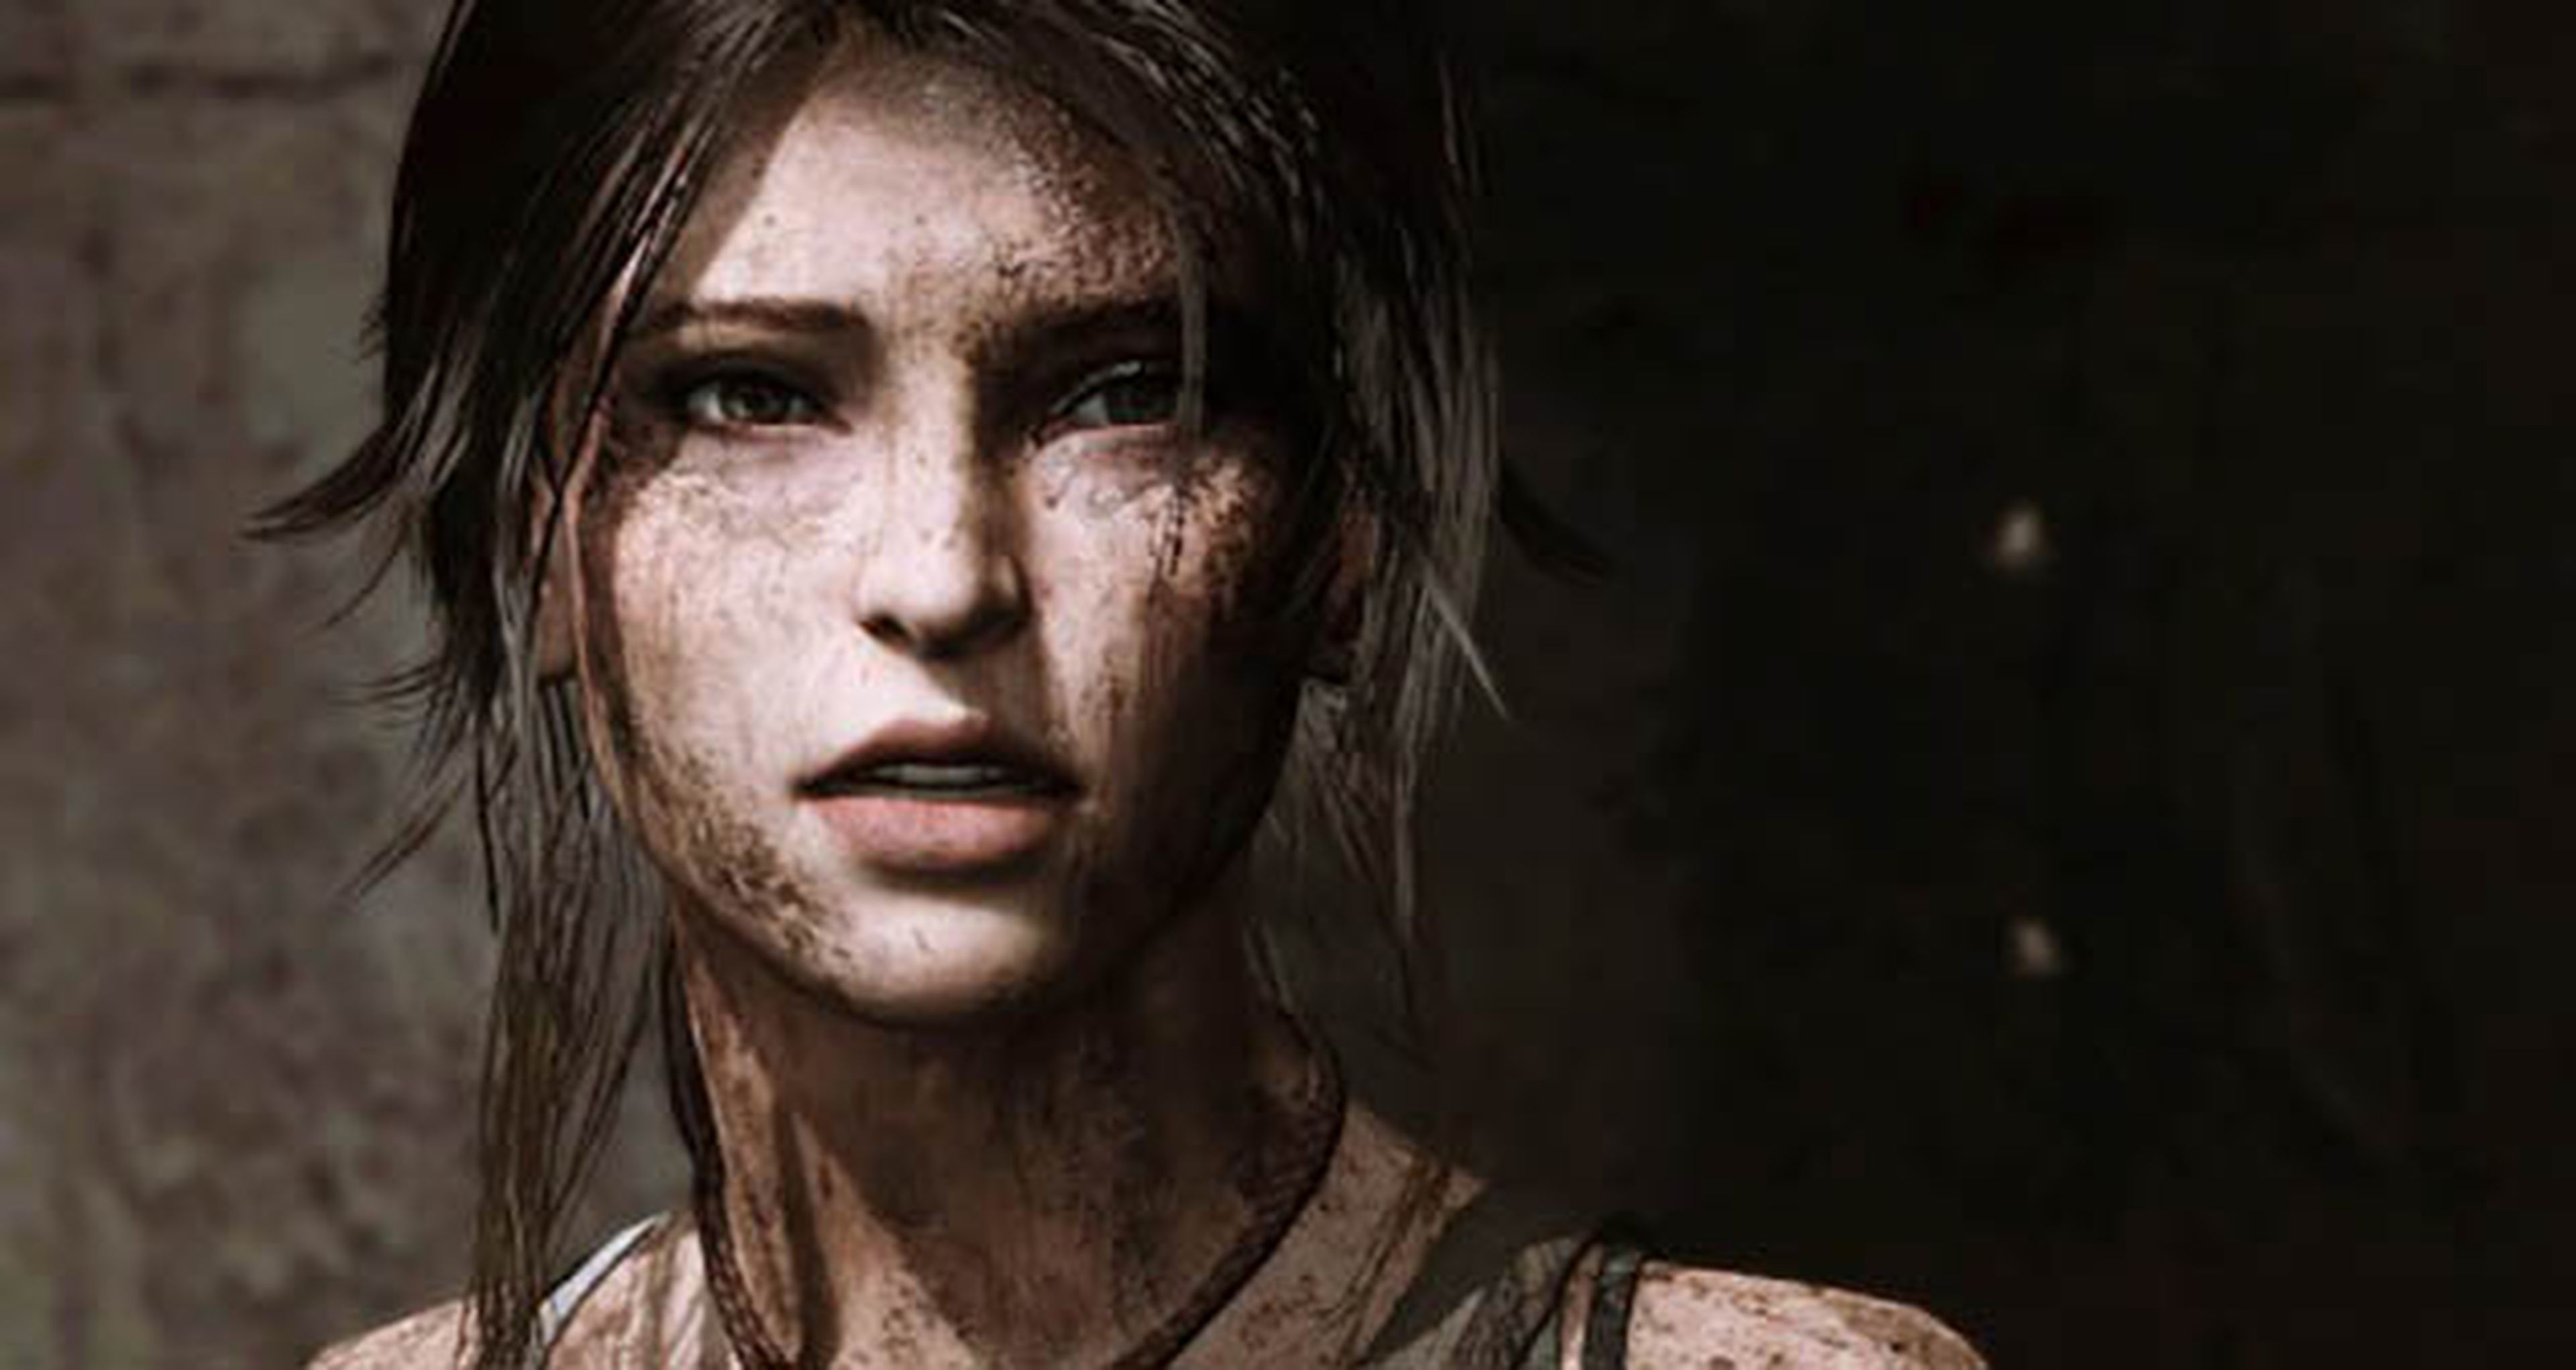 La exclusividad de Tomb Raider, bug en la demo de Uncharted 4... Las noticias de la semana 14/12/14